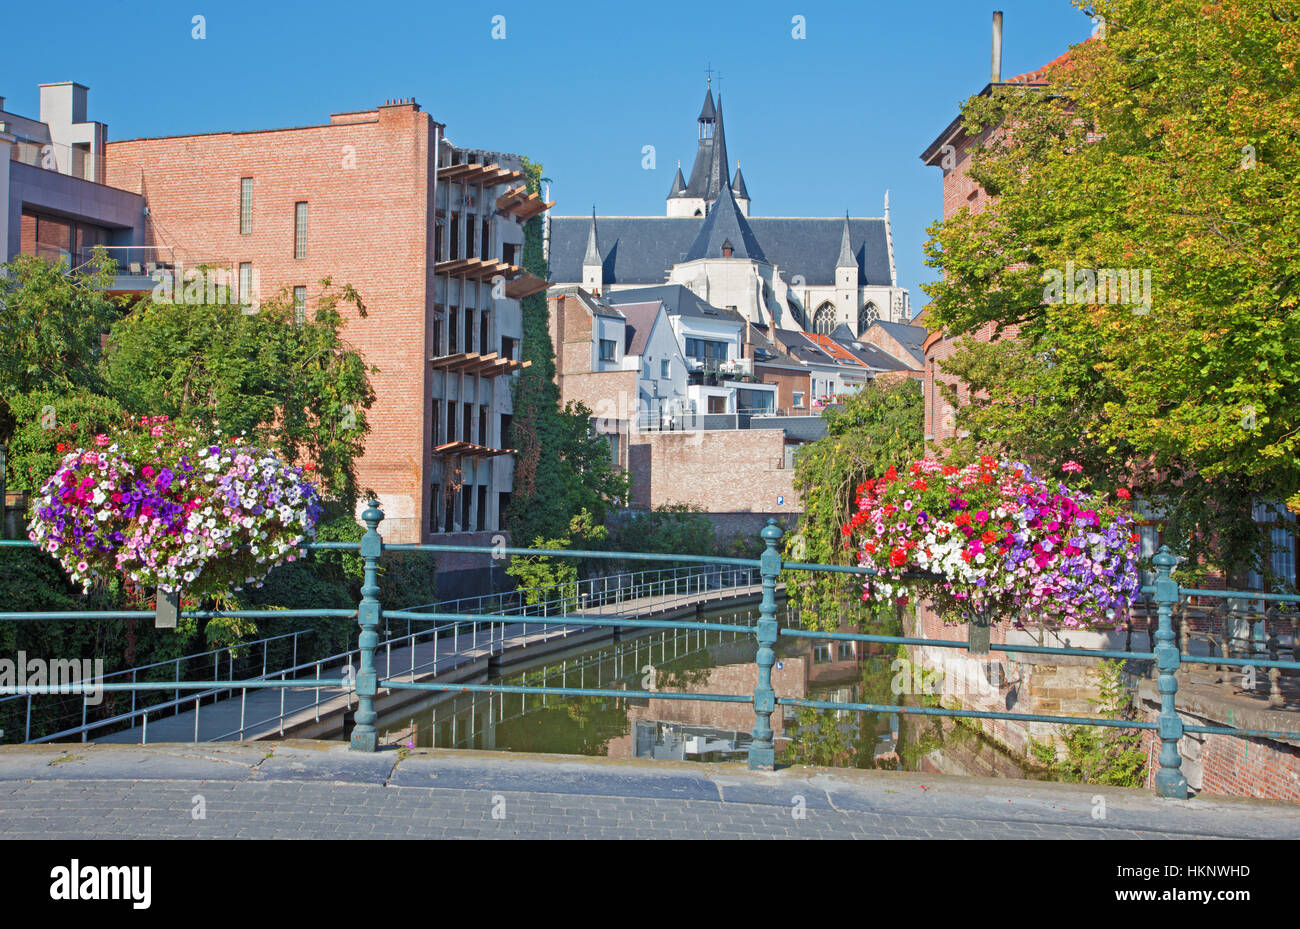 MECHELEN, Belgio - 4 settembre: Canal e la chiesa di Nostra Signora di tutta la Dyle in background. Foto Stock